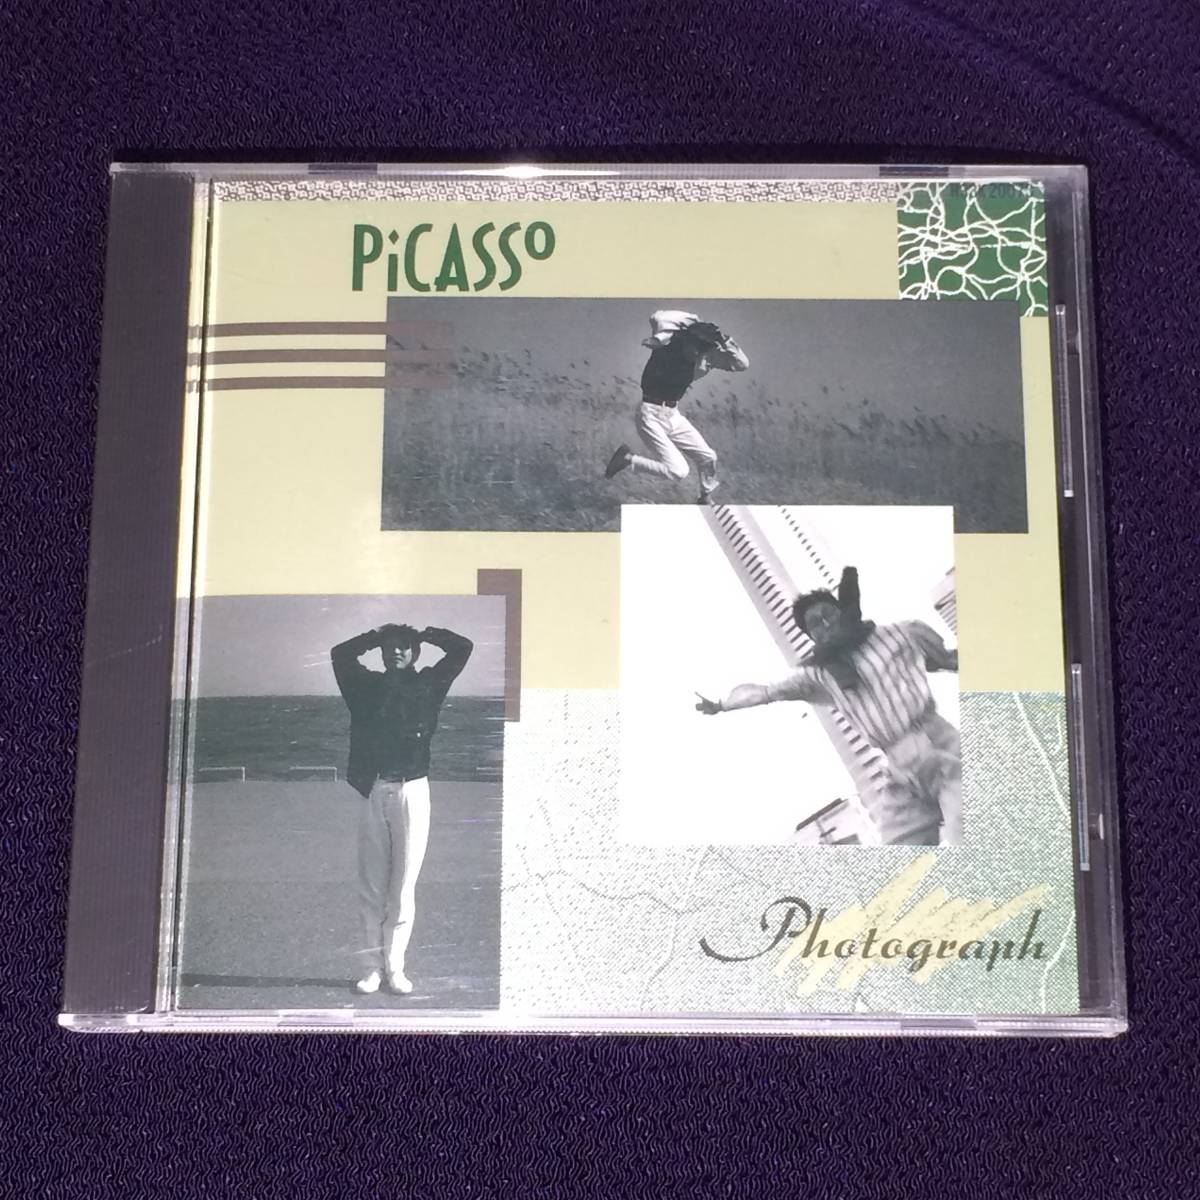 Picasso Picasso CD / Photograph 1987 3 -й в 1980 -х годах